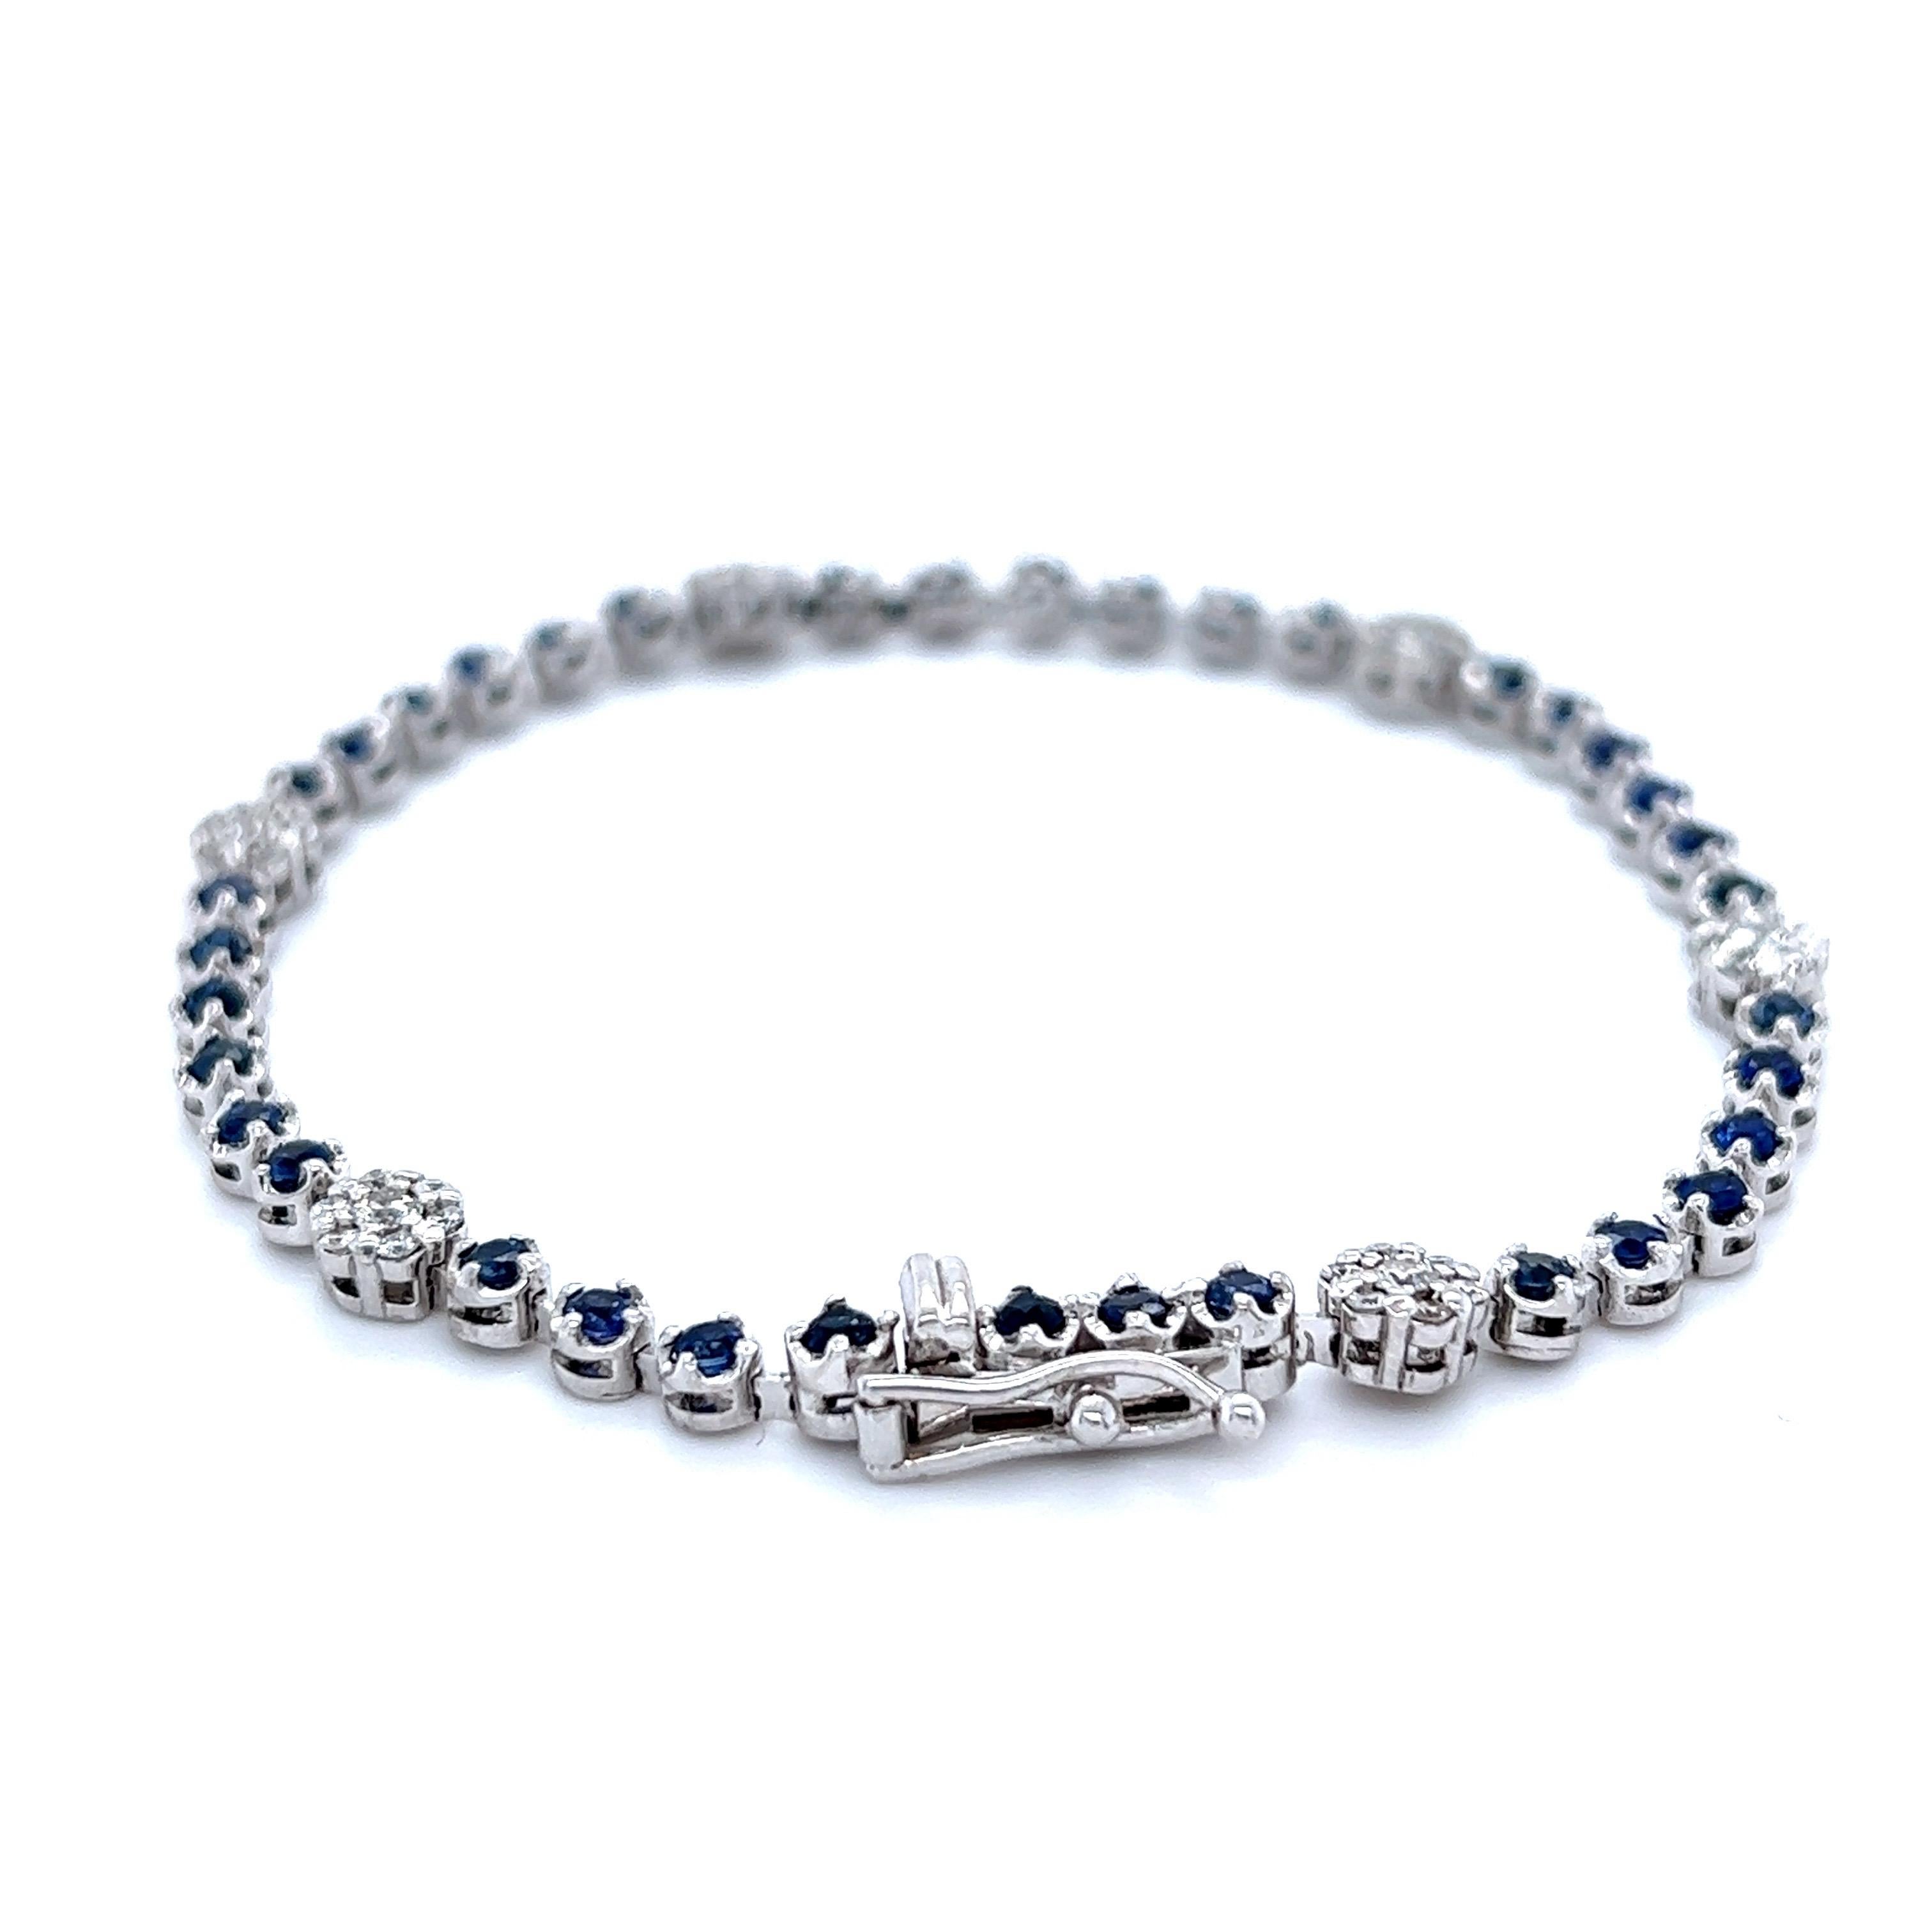 Ce bracelet contient 37 saphirs bleus taillés en rond qui pèsent 1.84 carats et 42 diamants blancs taillés en rond qui pèsent 0.61 carats. Le poids total en carats du bracelet est de 2,45 carats. 

Elle est sertie en or blanc 14 carats et a un